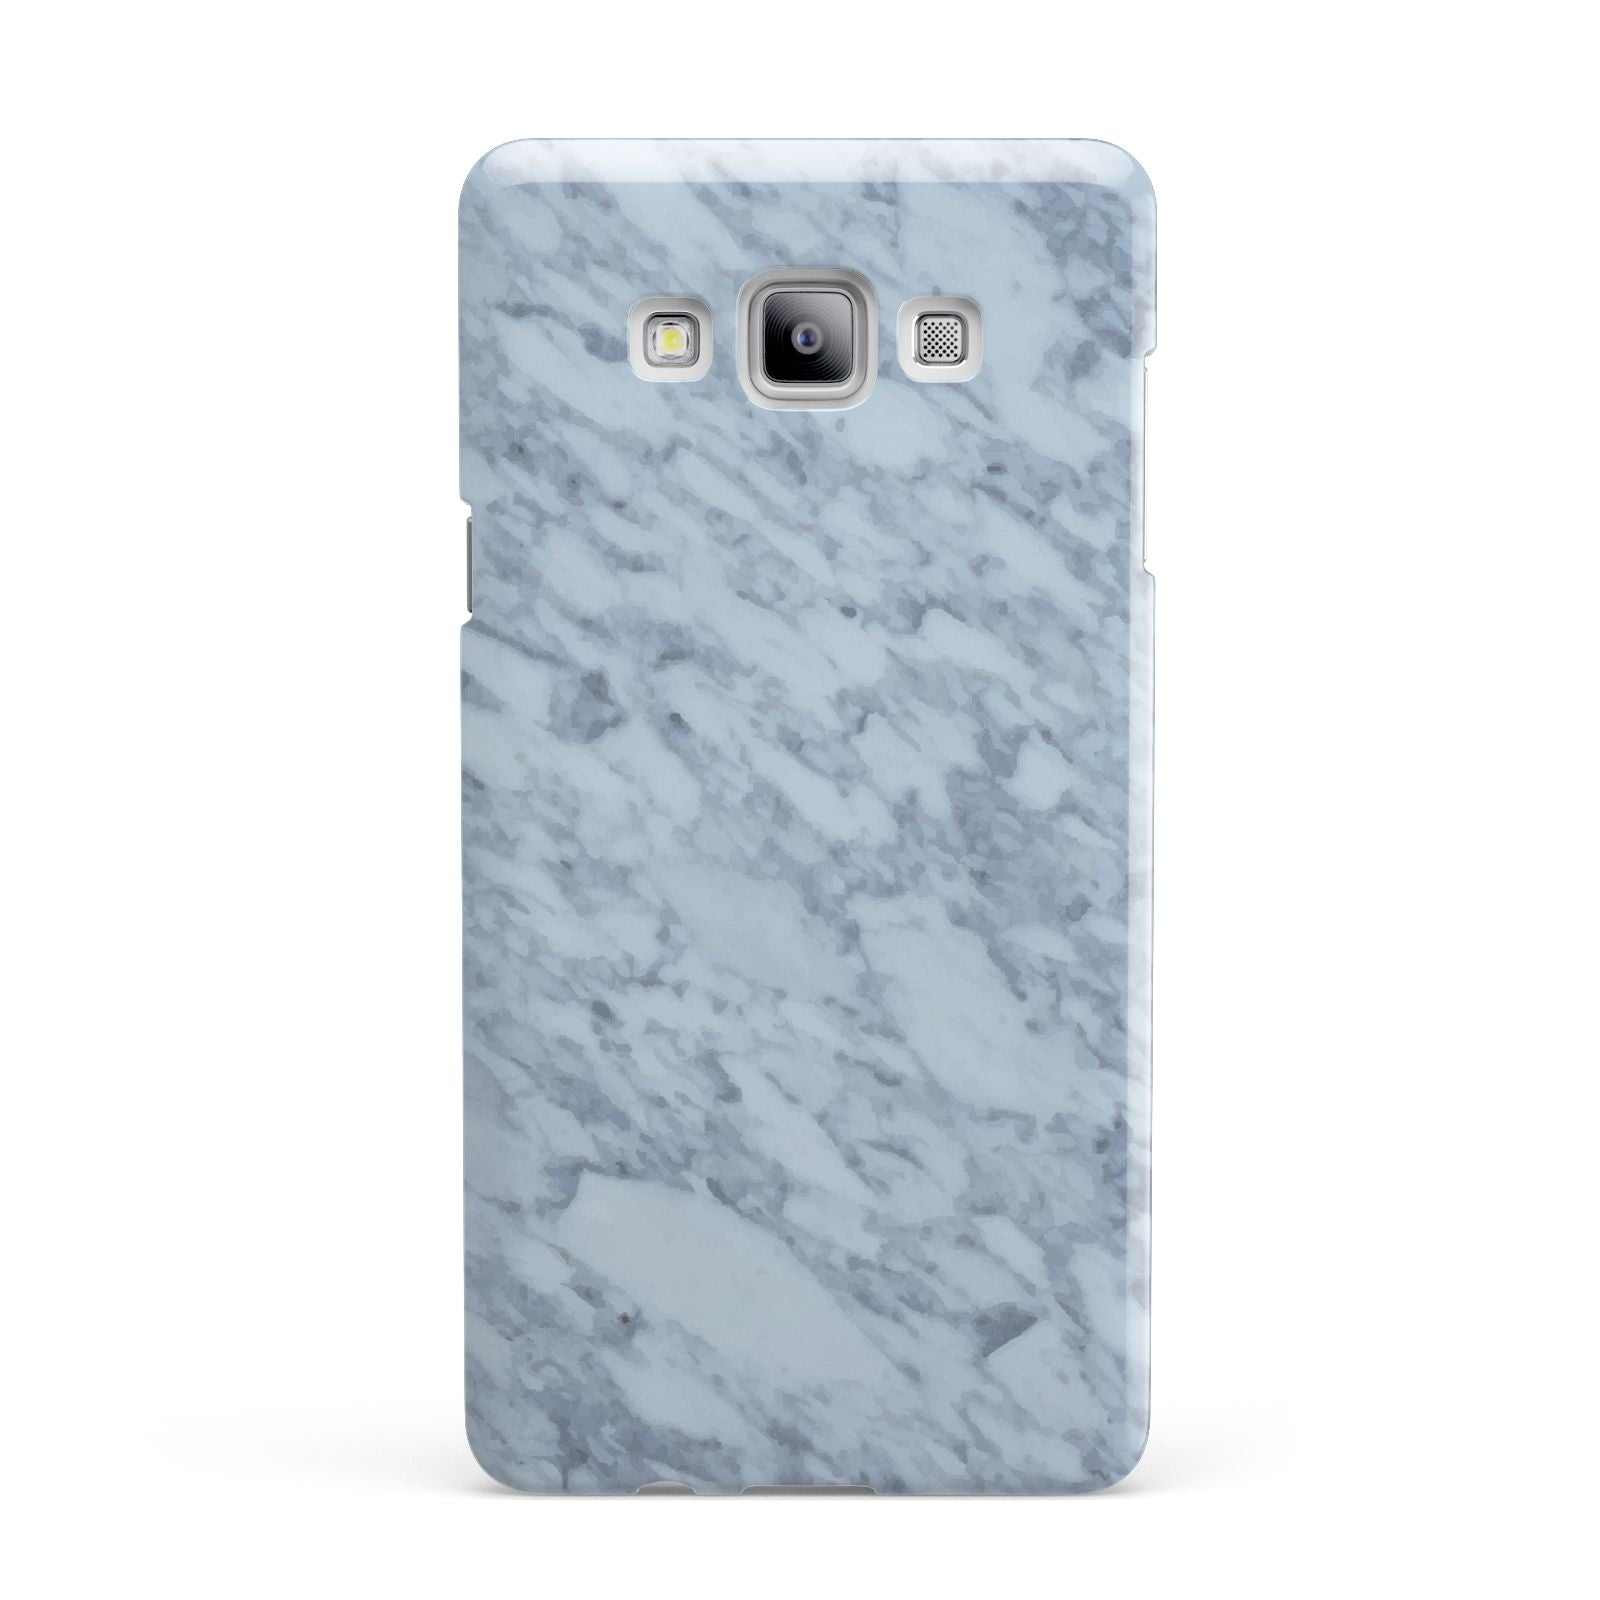 Faux Marble Grey 2 Samsung Galaxy A7 2015 Case